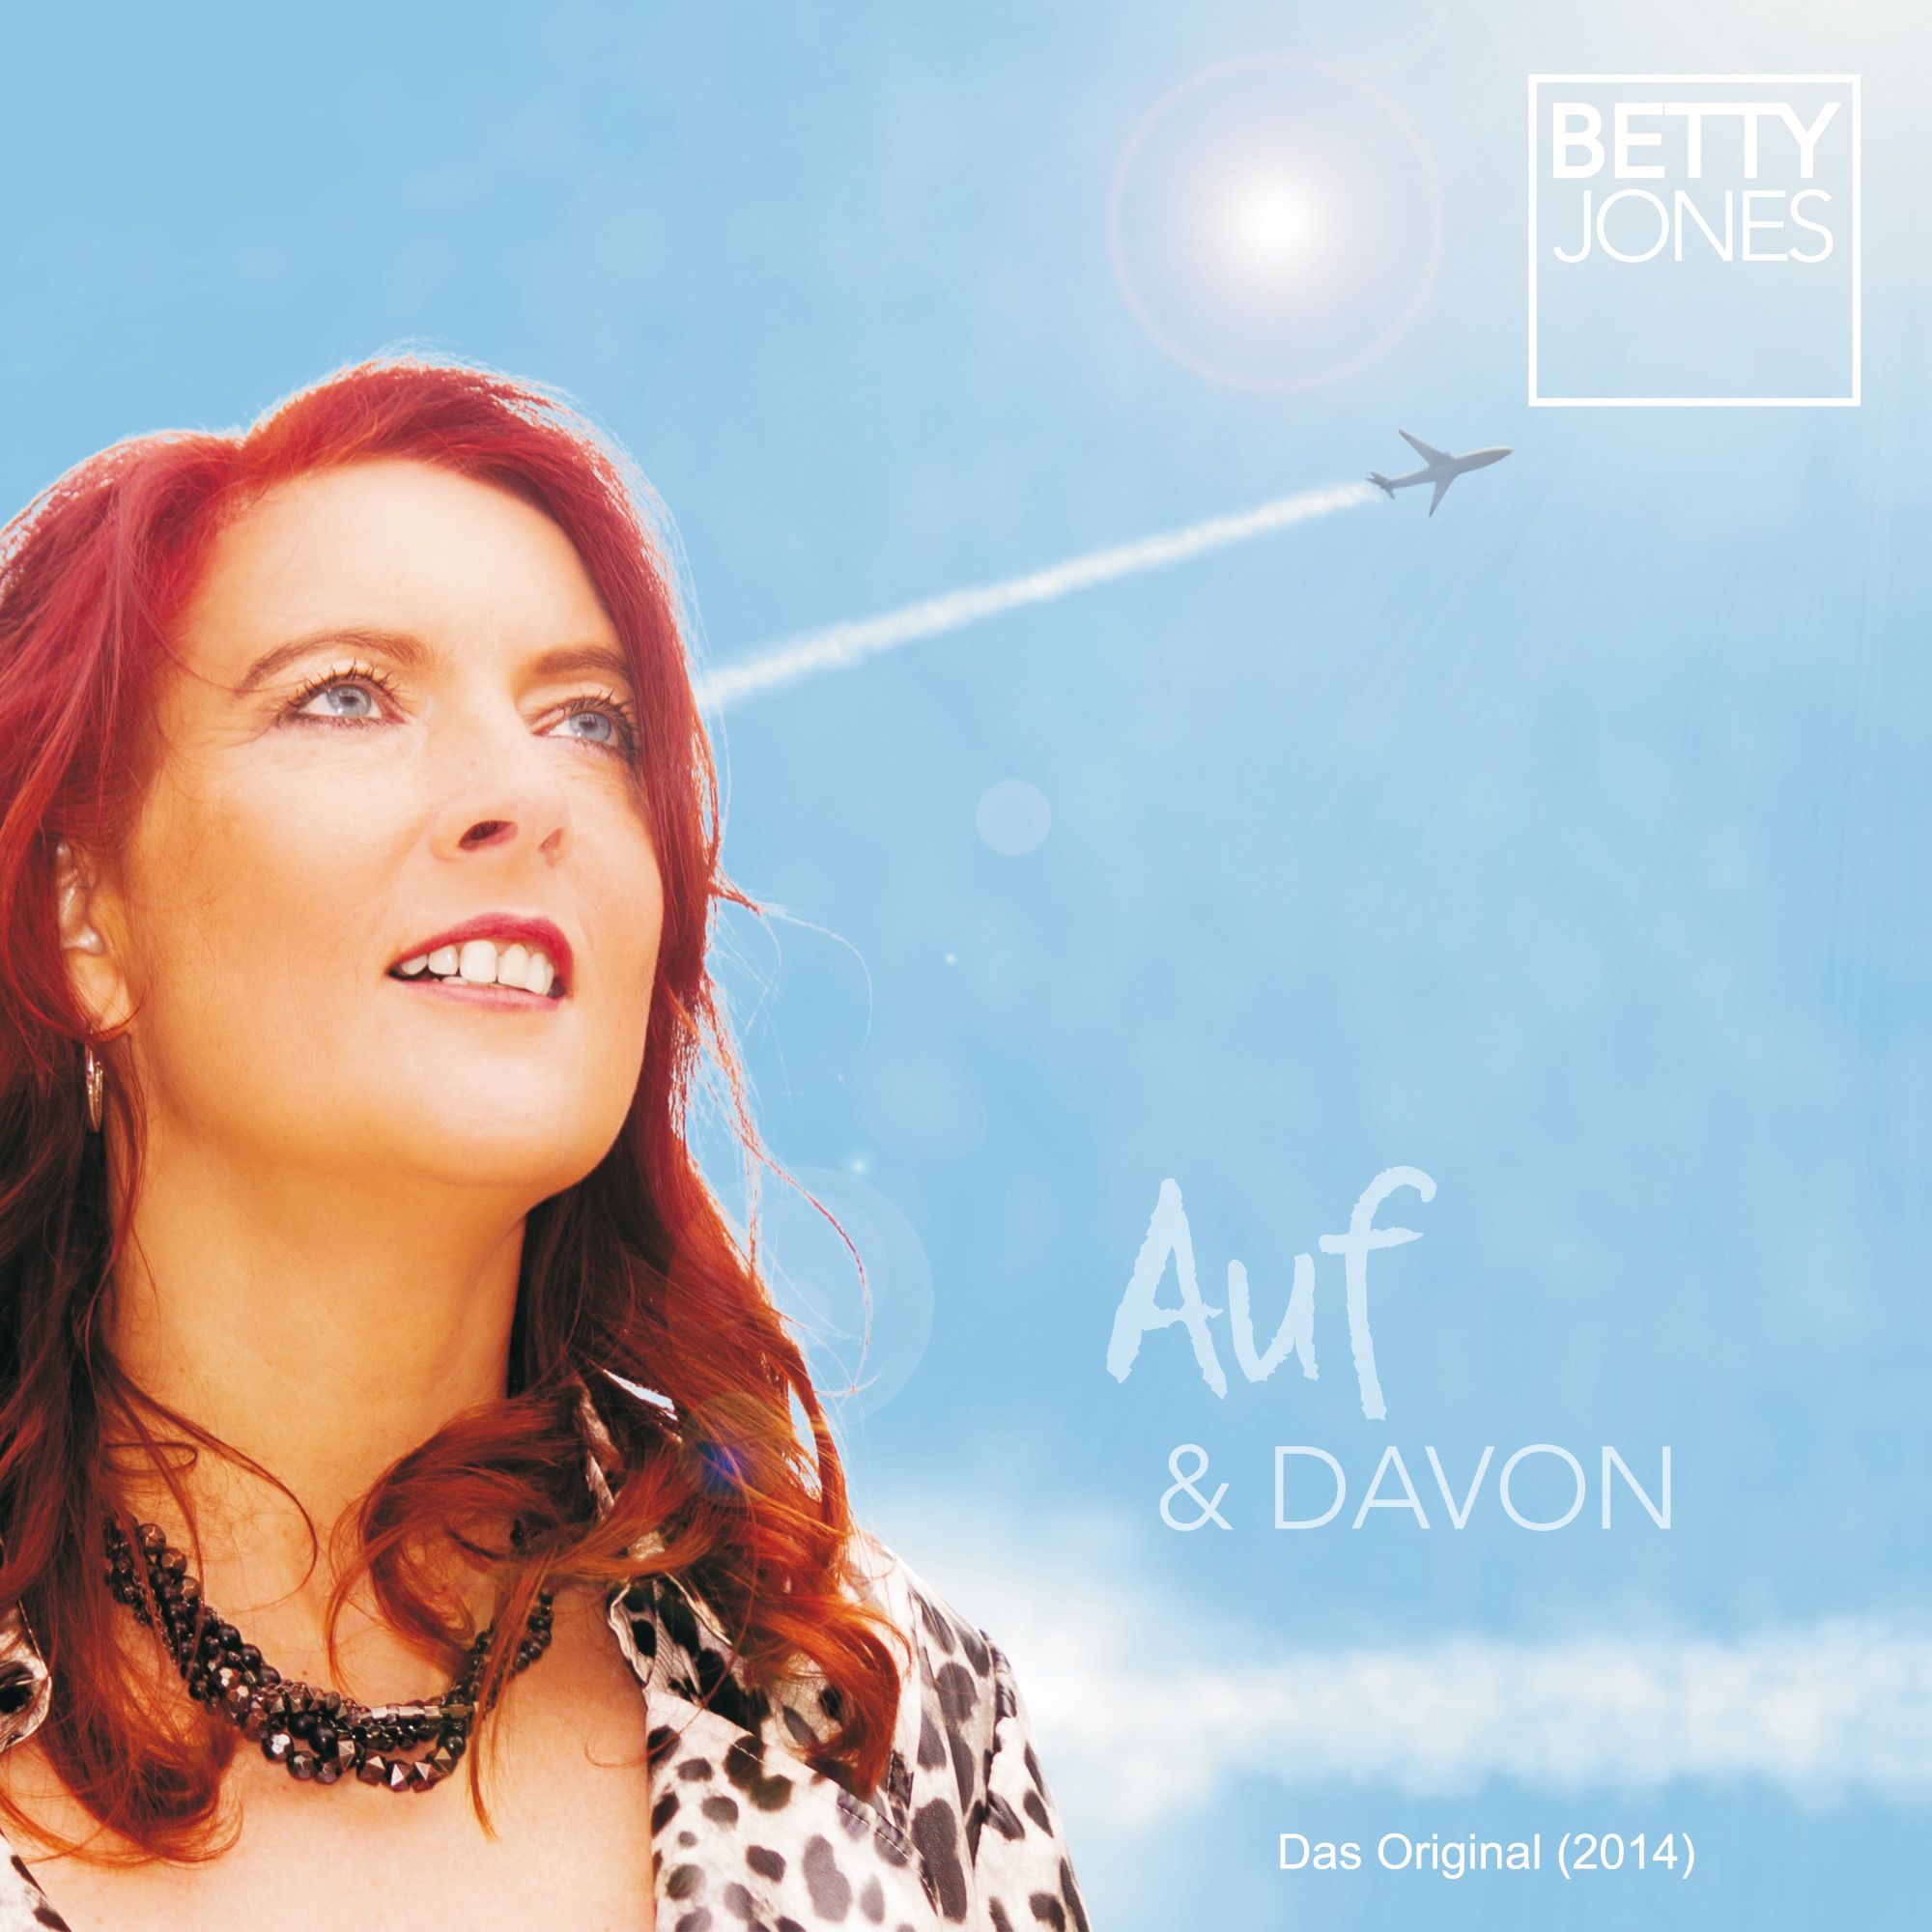 „Auf und davon (Das Original 2014) - Single“ von Betty Jones in iTunes